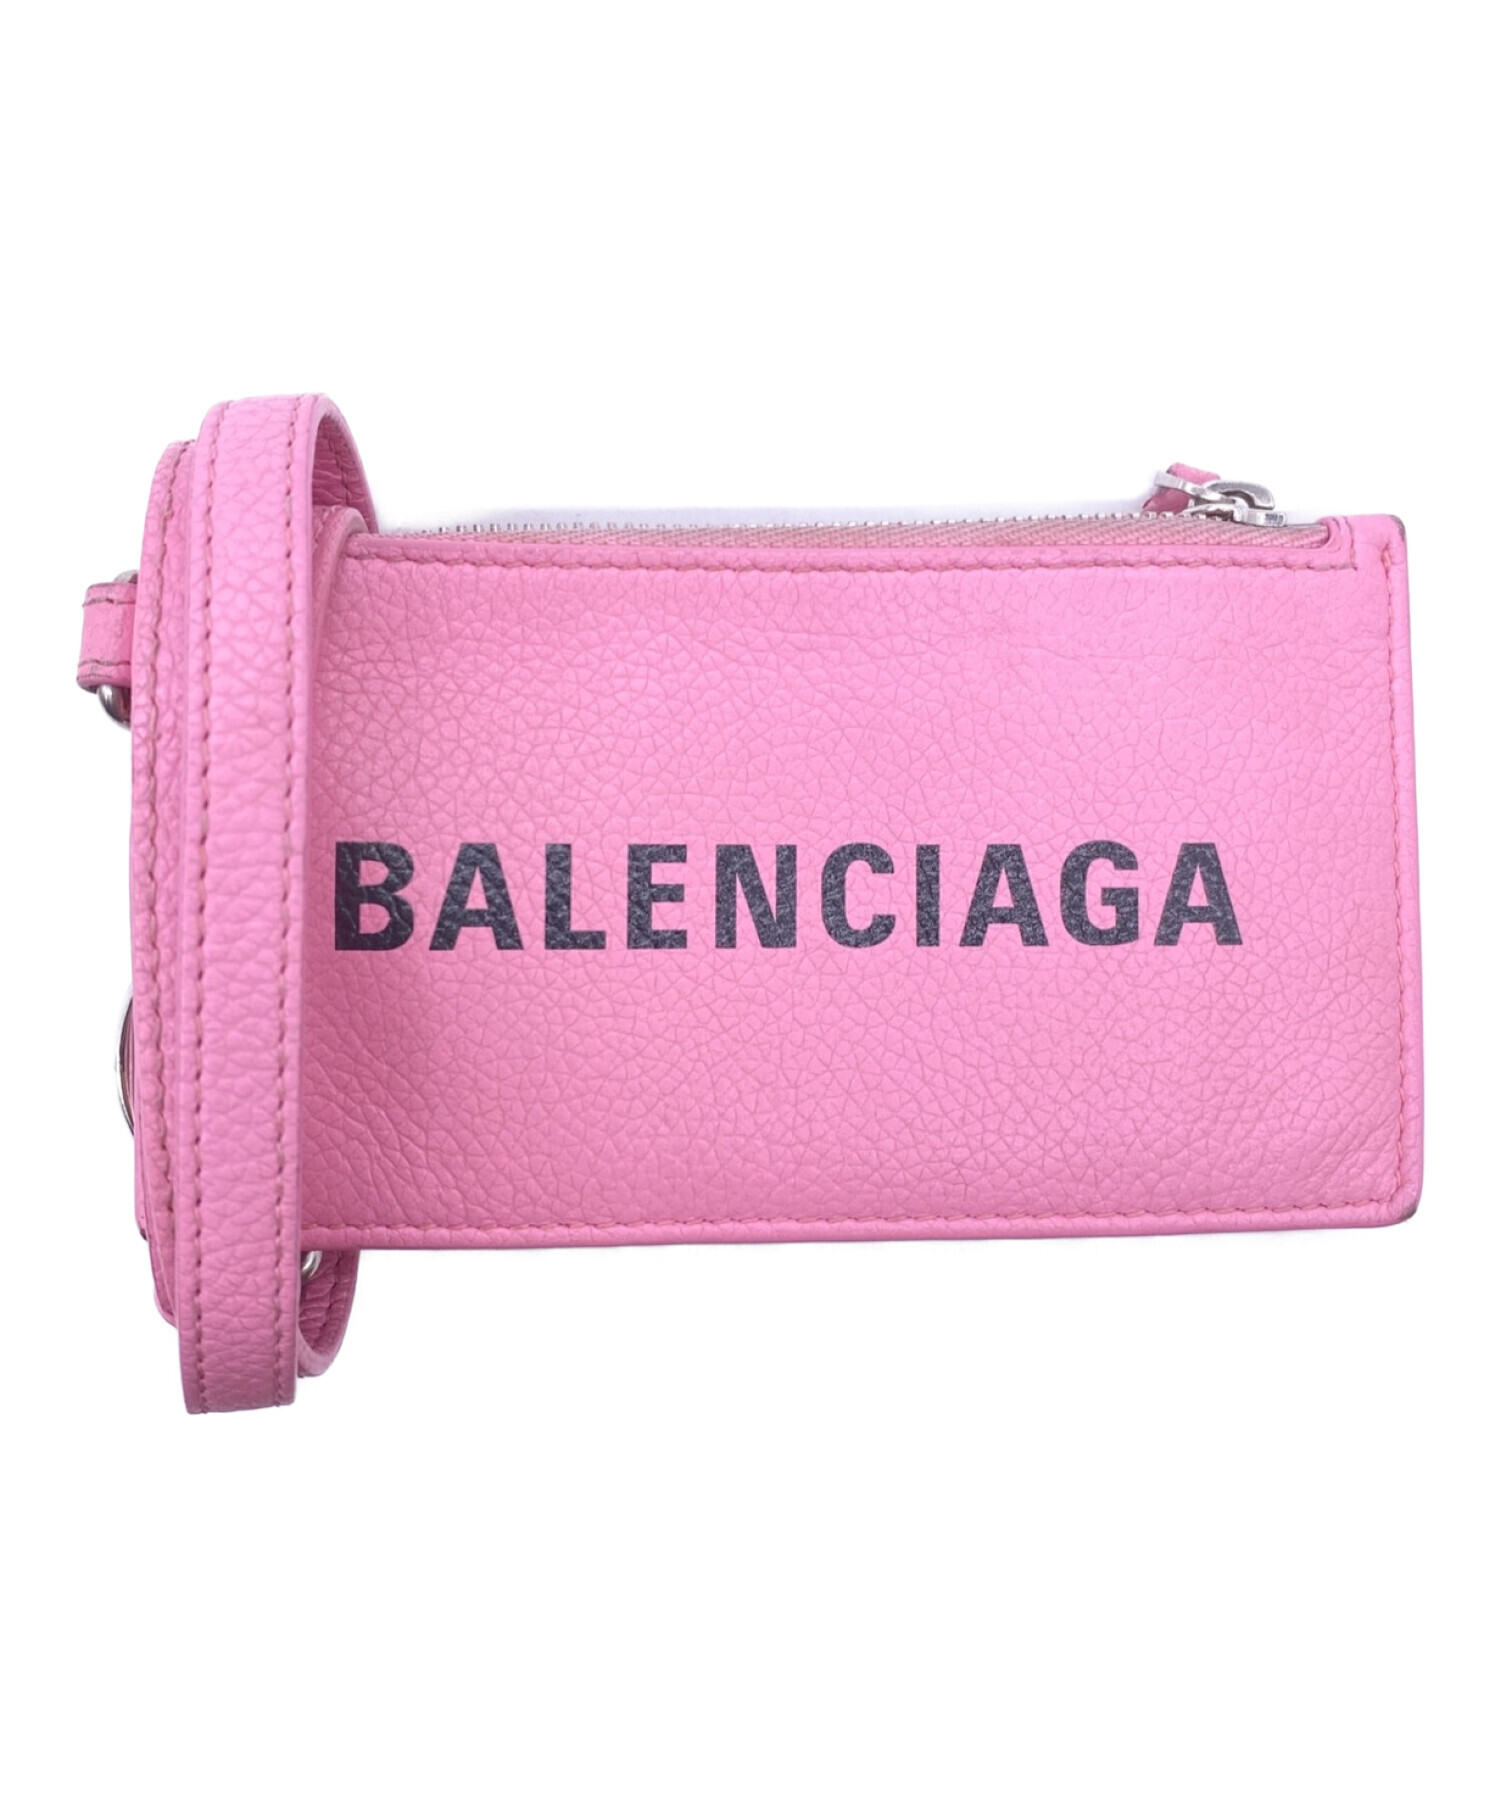 BALENCIAGA (バレンシアガ) カードケース ピンク サイズ:-